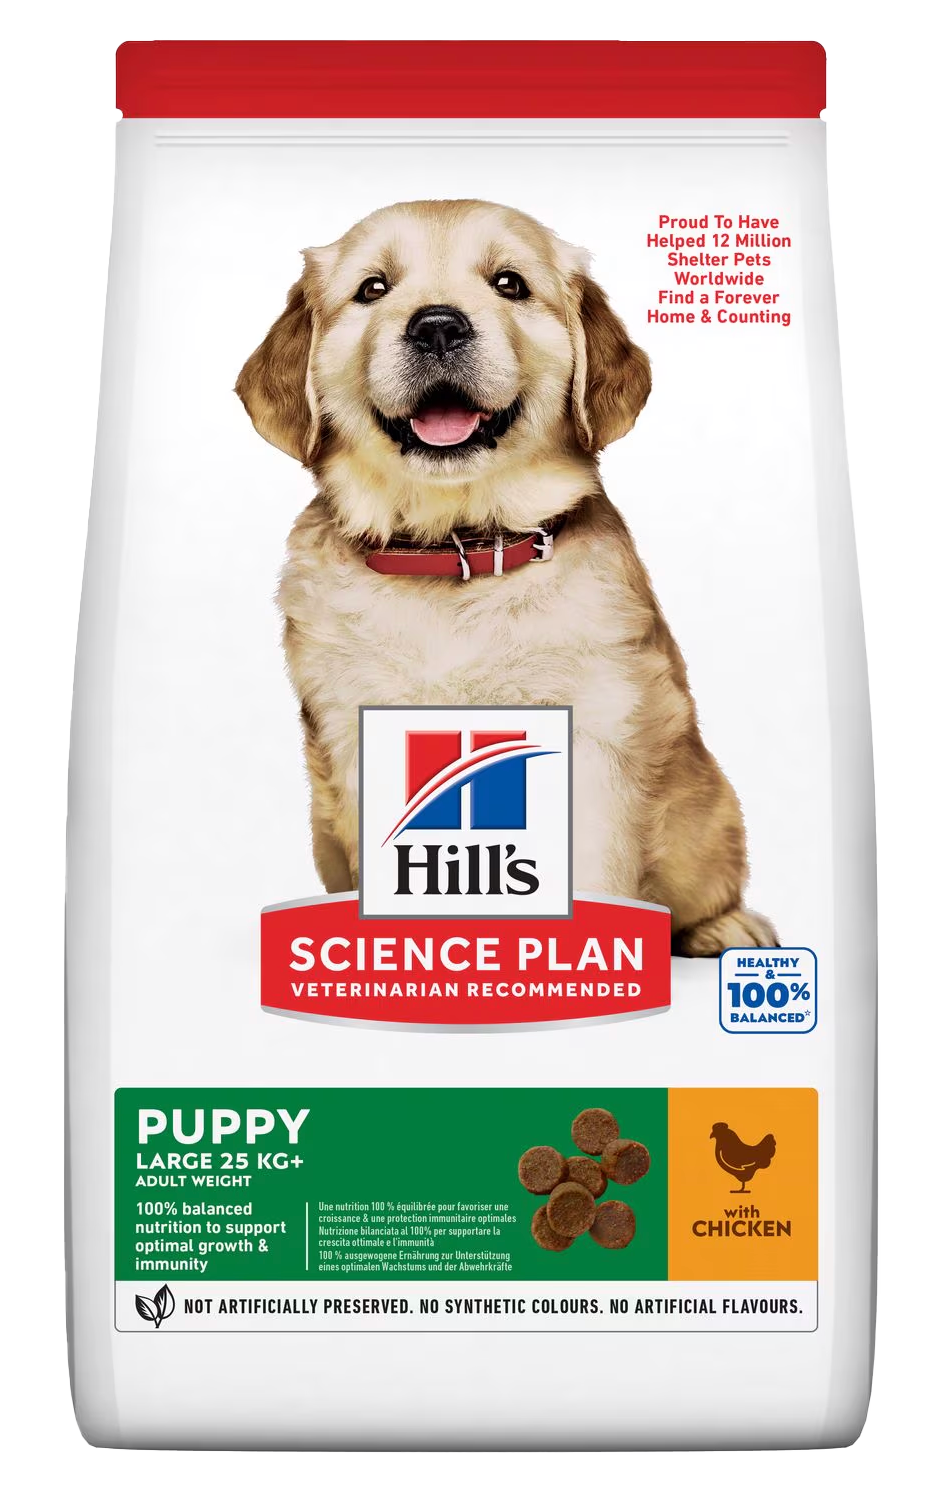 Hill’s Science Diet Puppy Food - Best Puppy Foods